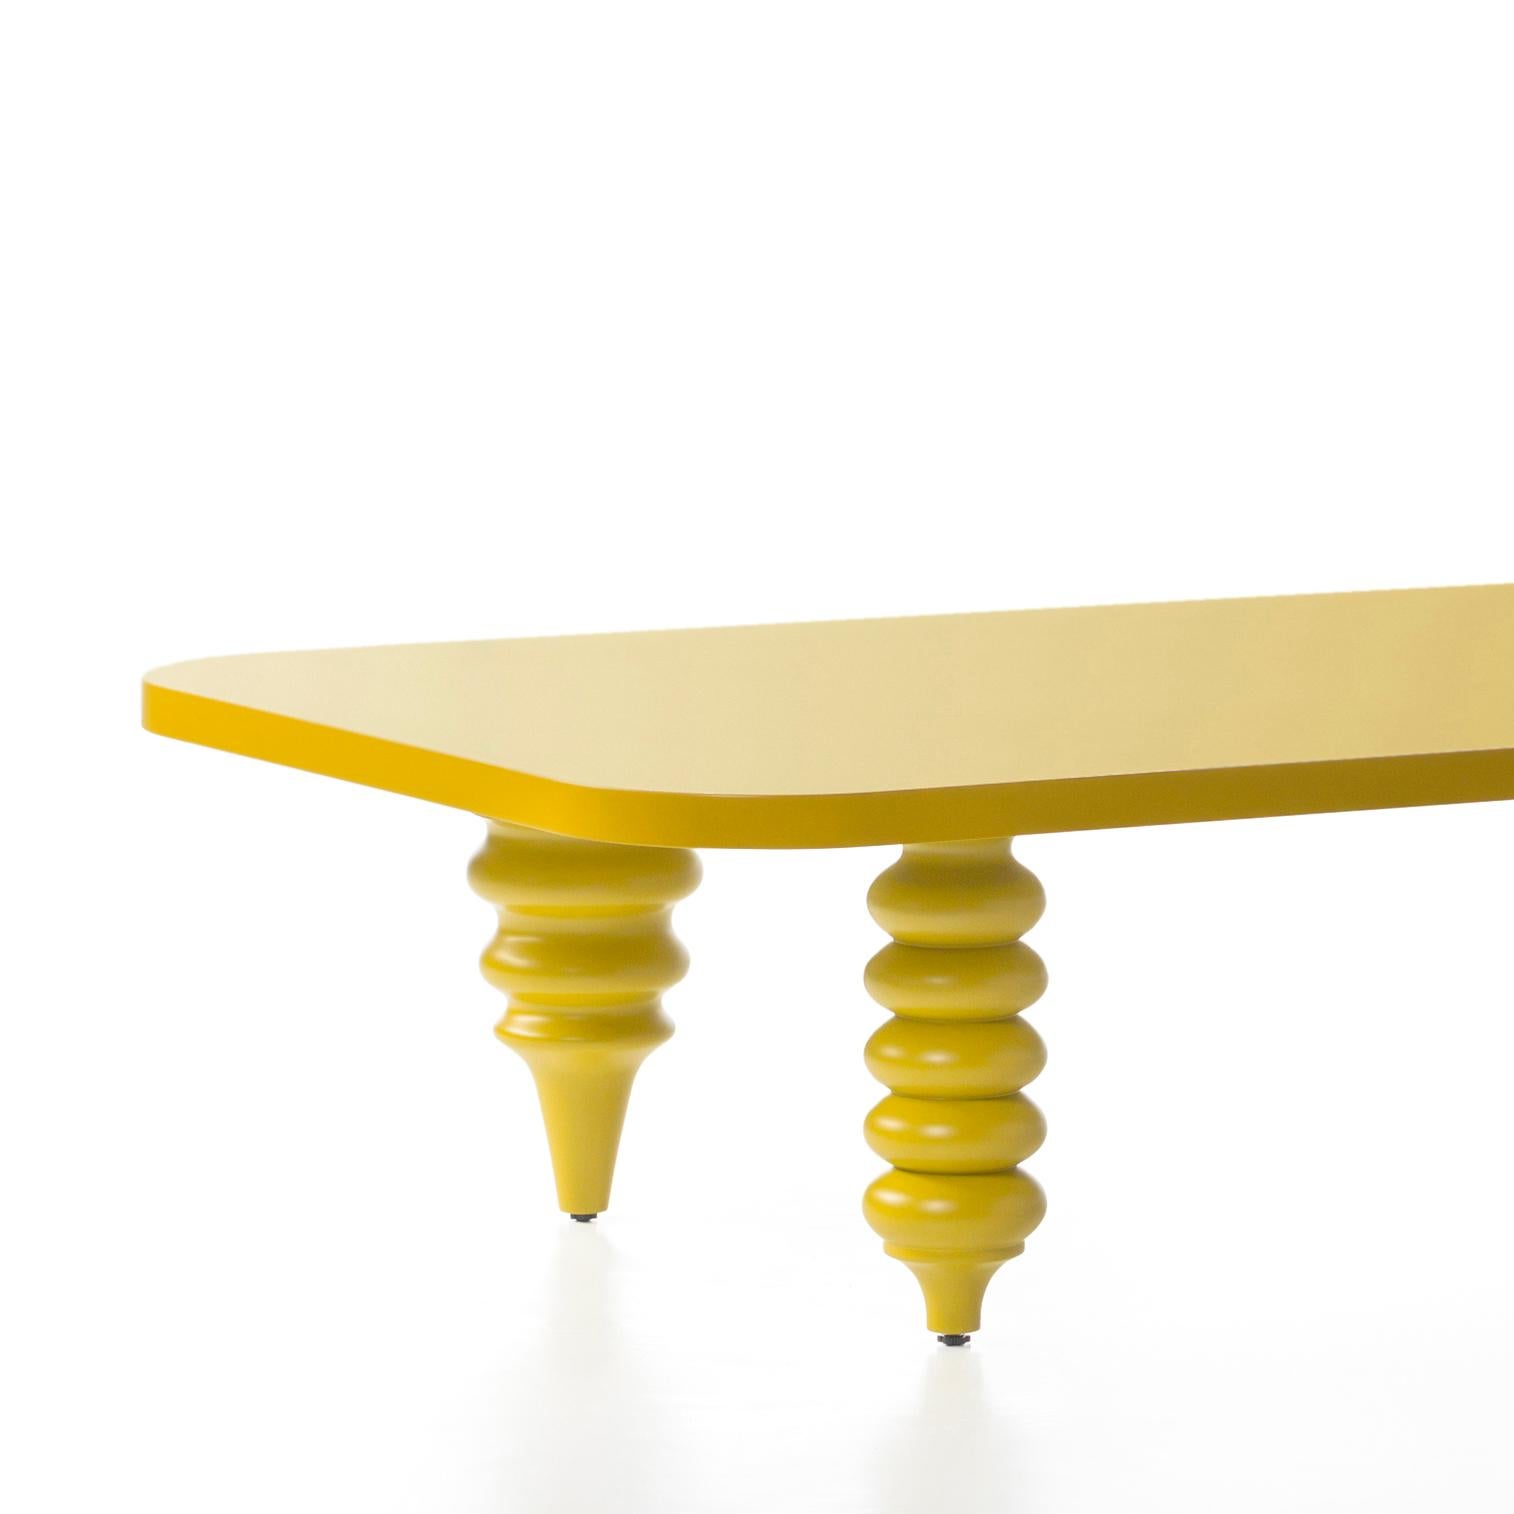 Niedriger Tisch, entworfen von Jaime Hayon, hergestellt in Barcelona von BD.

Sockel und Beine aus gedrechseltem massivem Erlenholz, gelb lackiert, MDF.

Maße: 50 x 150 x H 35 cm.